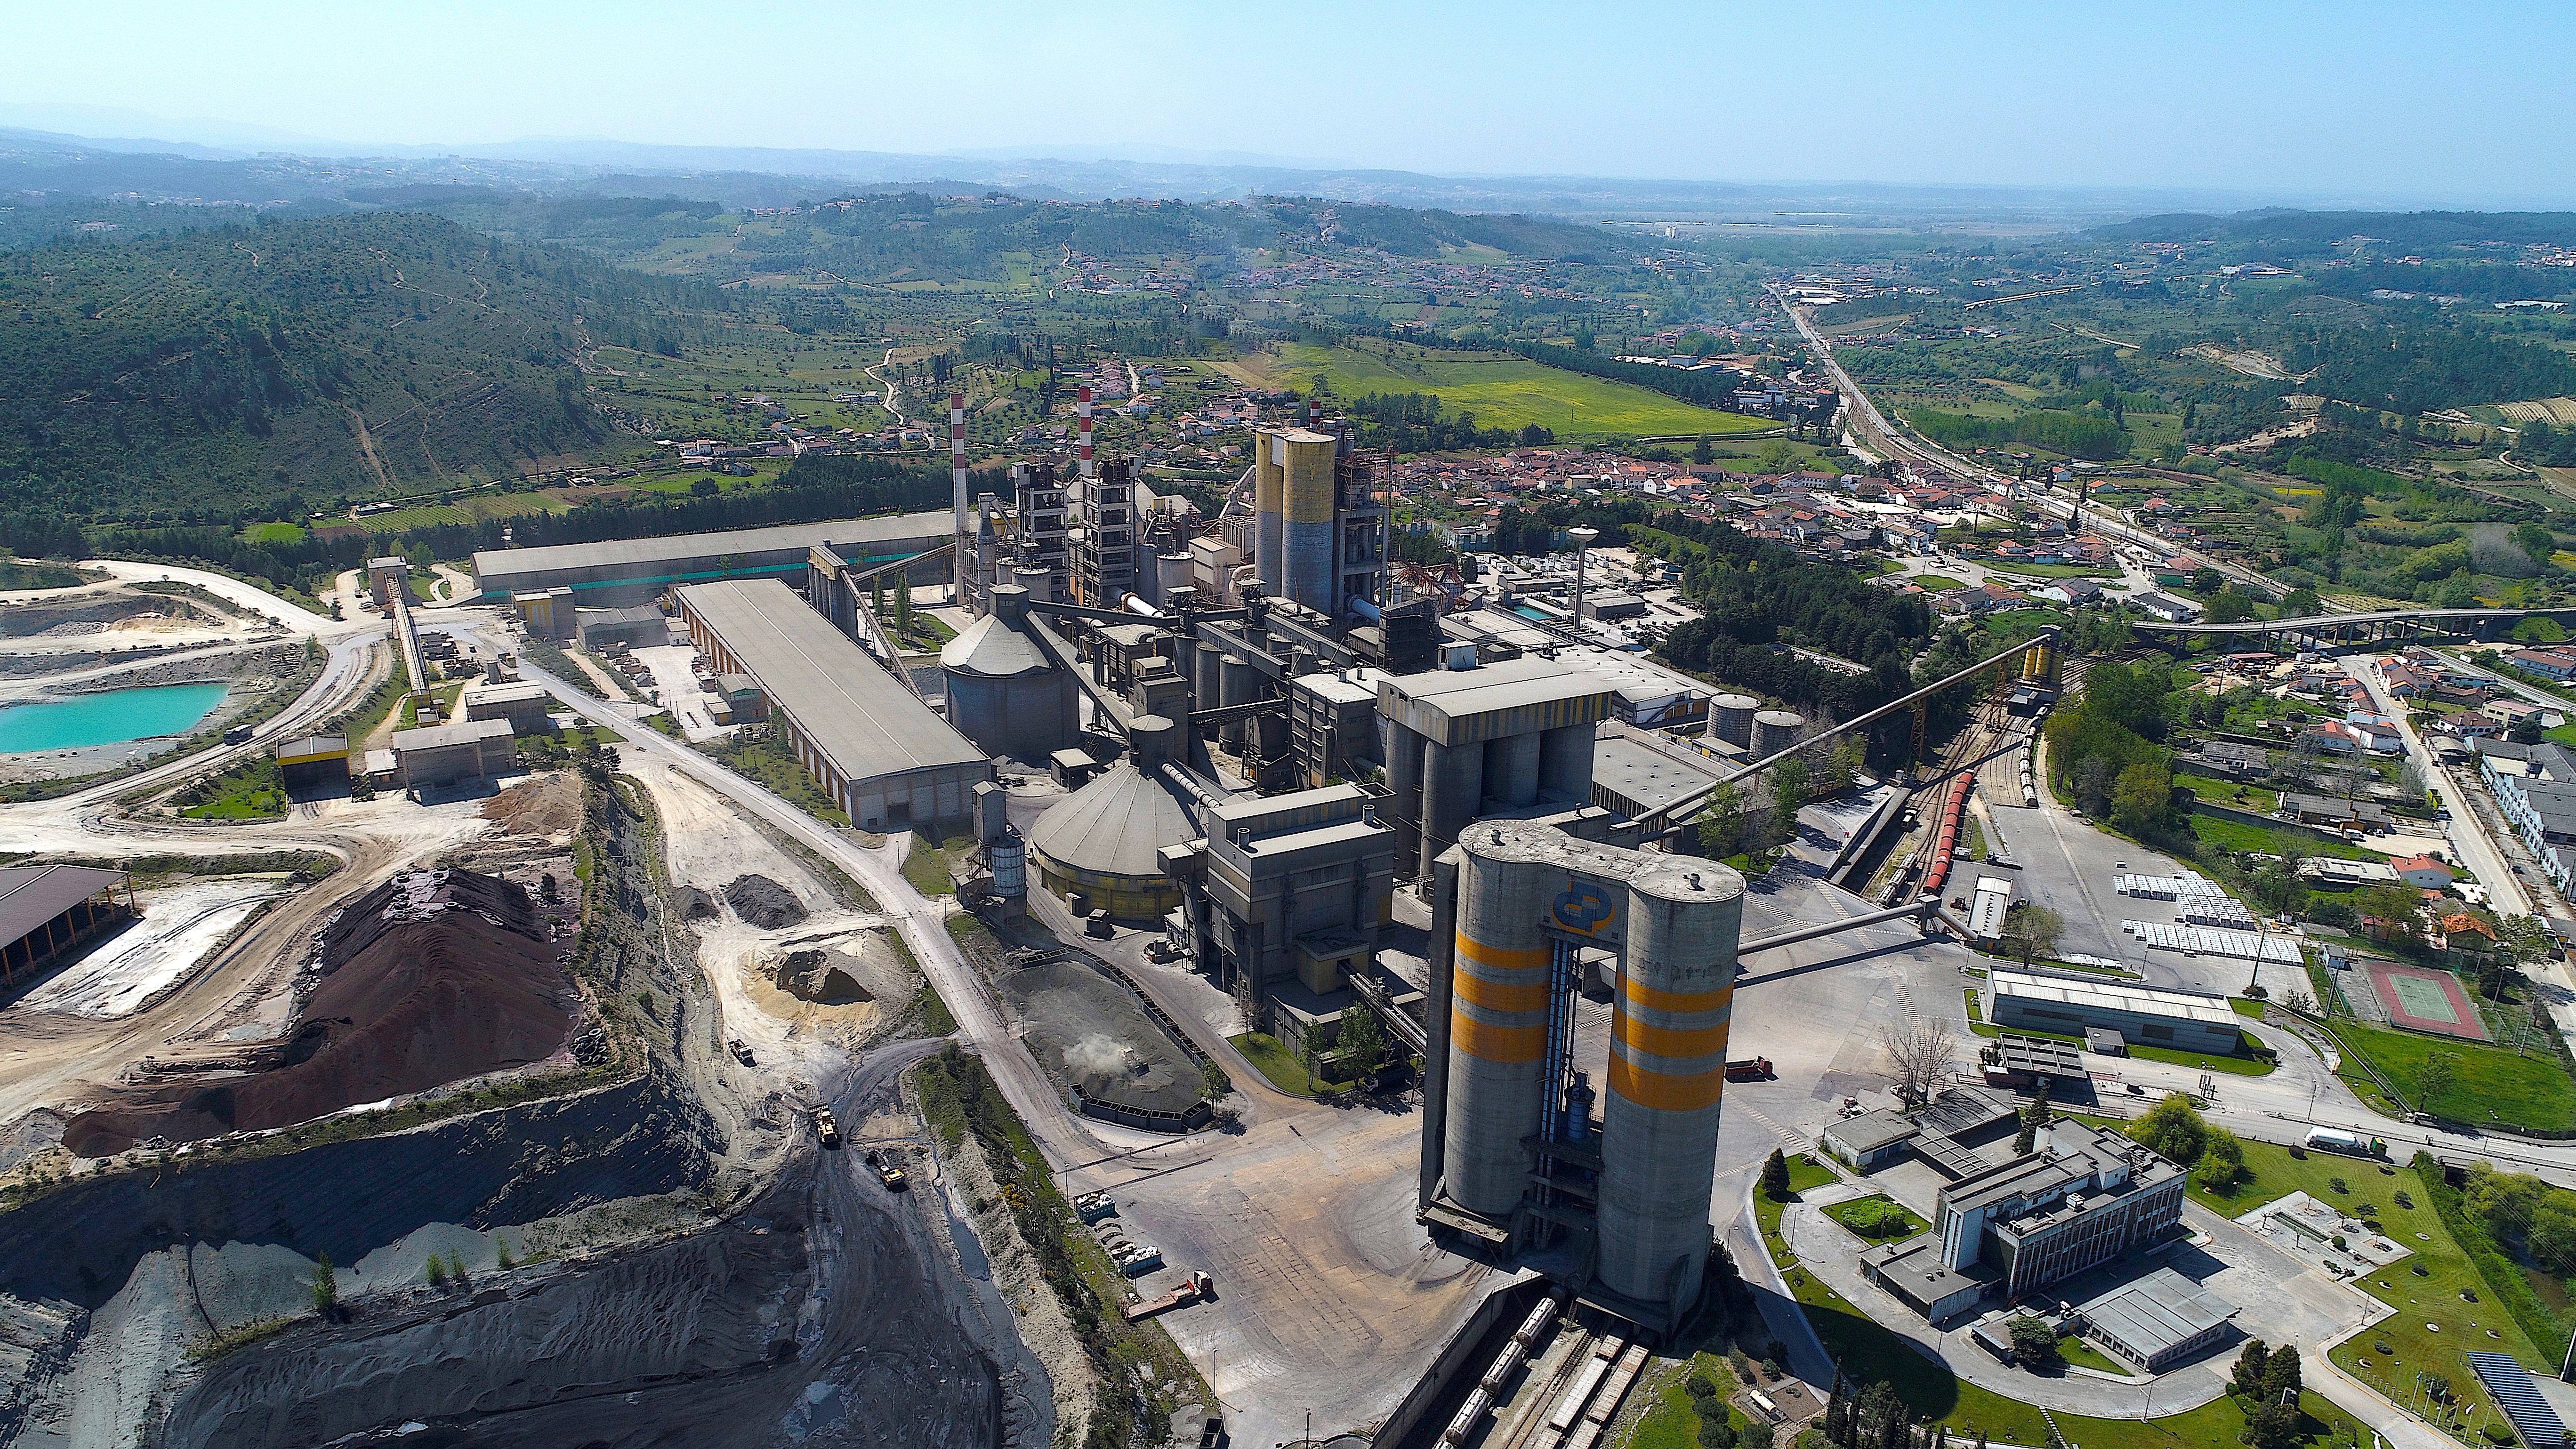 Cimpor's Souselas cement factory